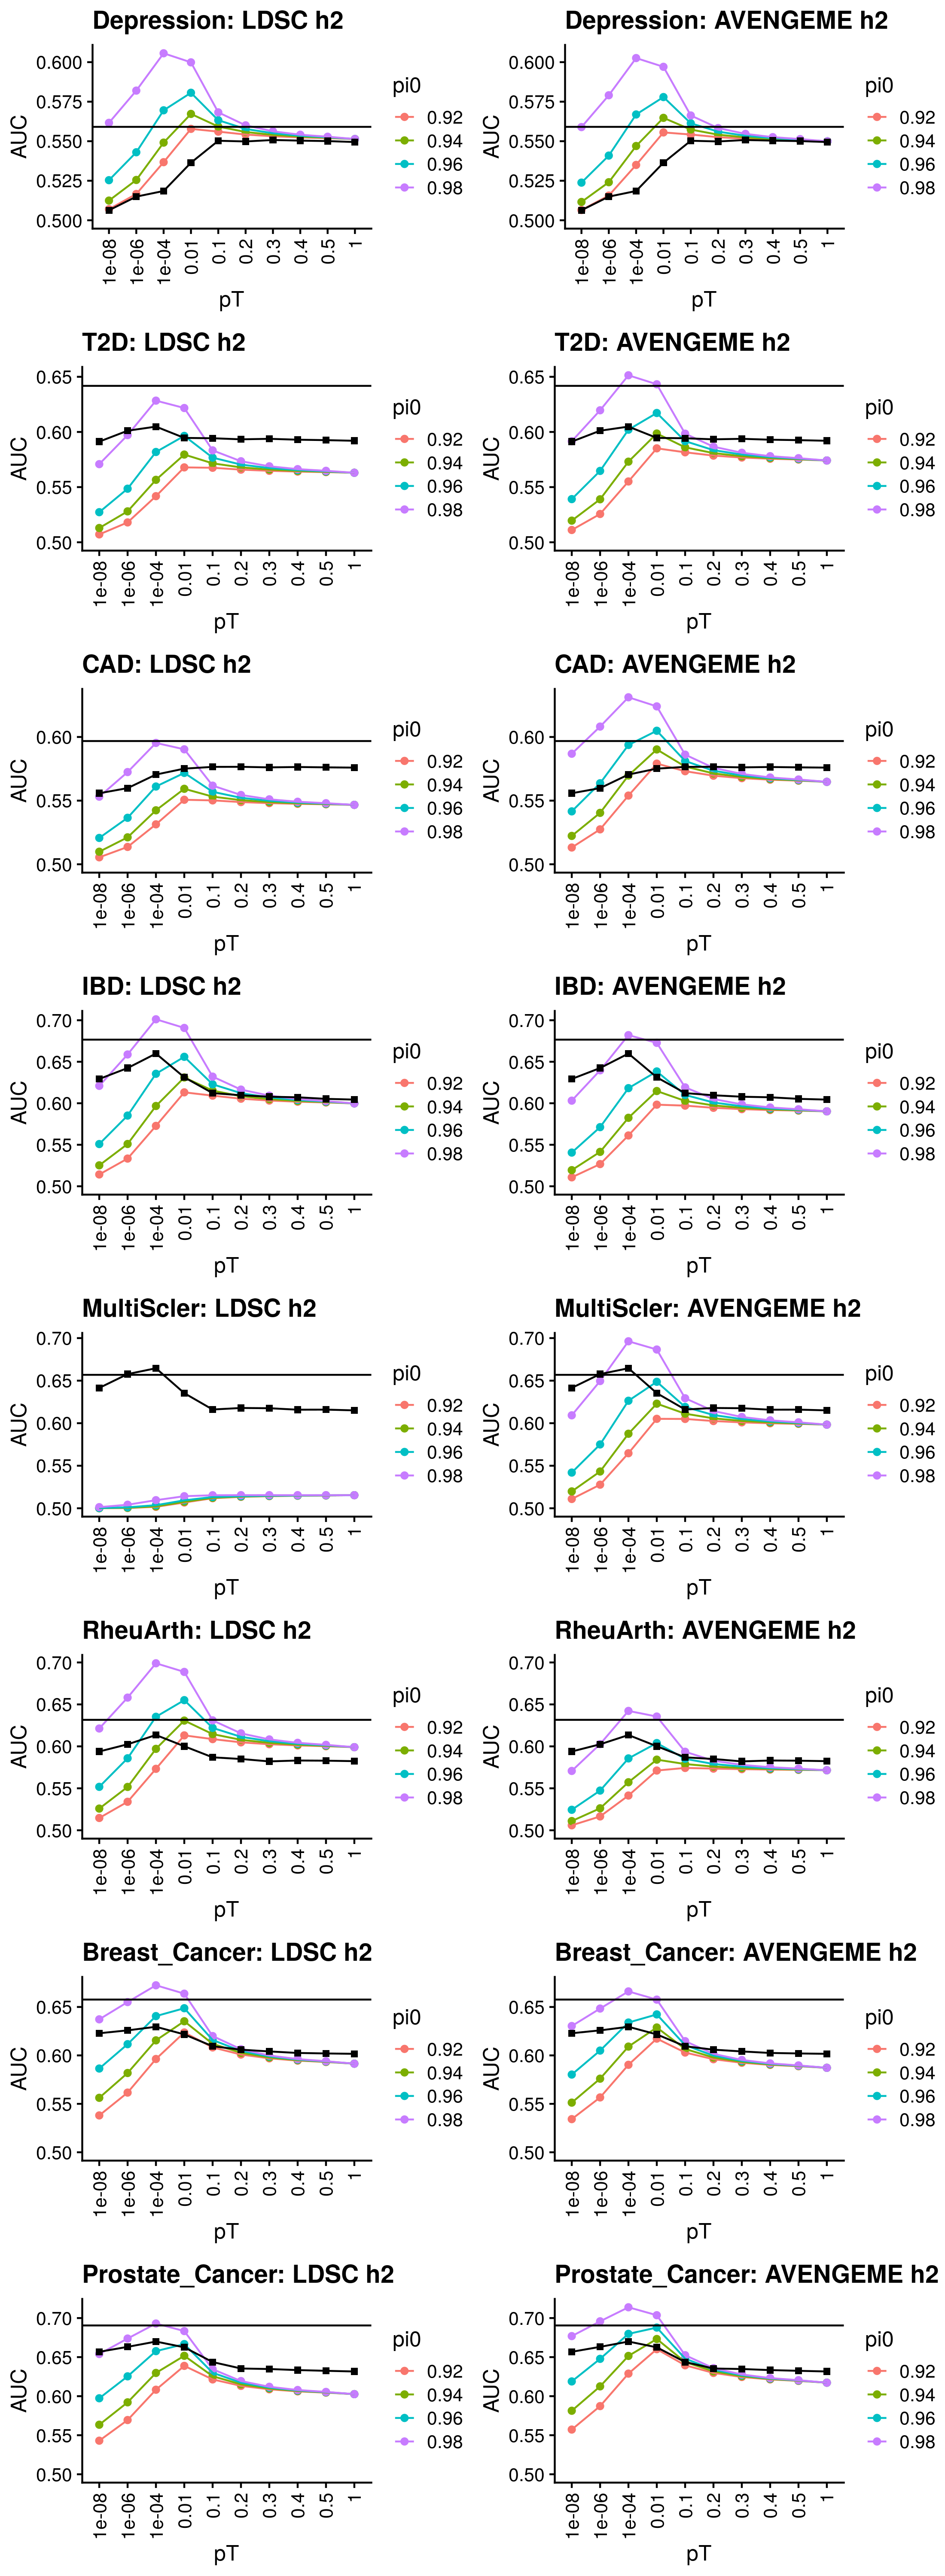 Estimates of AUC using AVENGEME/LDSC